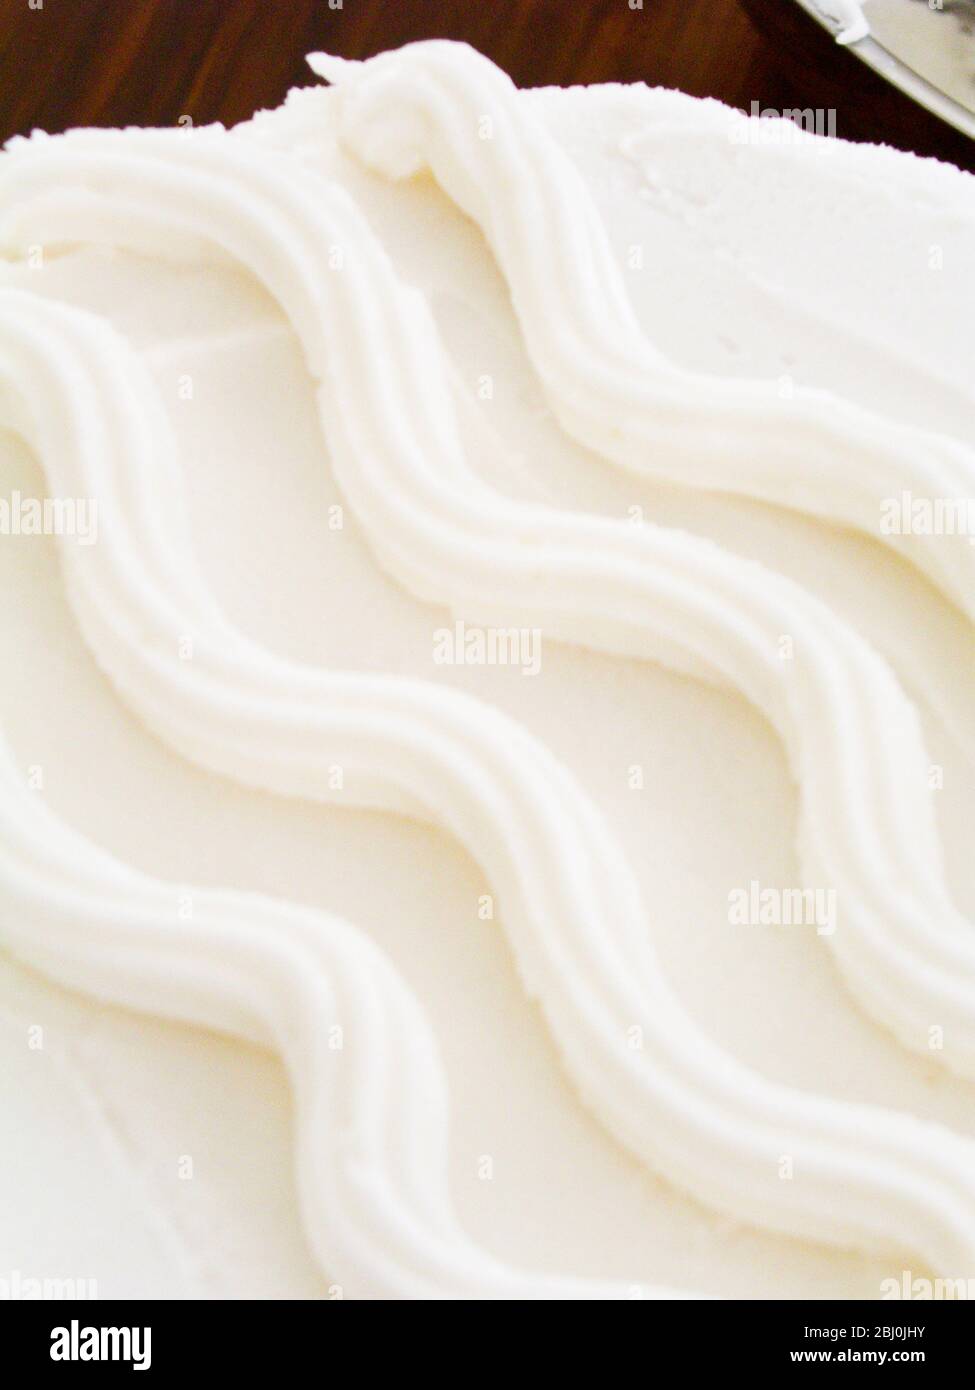 Dettaglio di semplice disegno ondulato su torta ghiacciata - Foto Stock